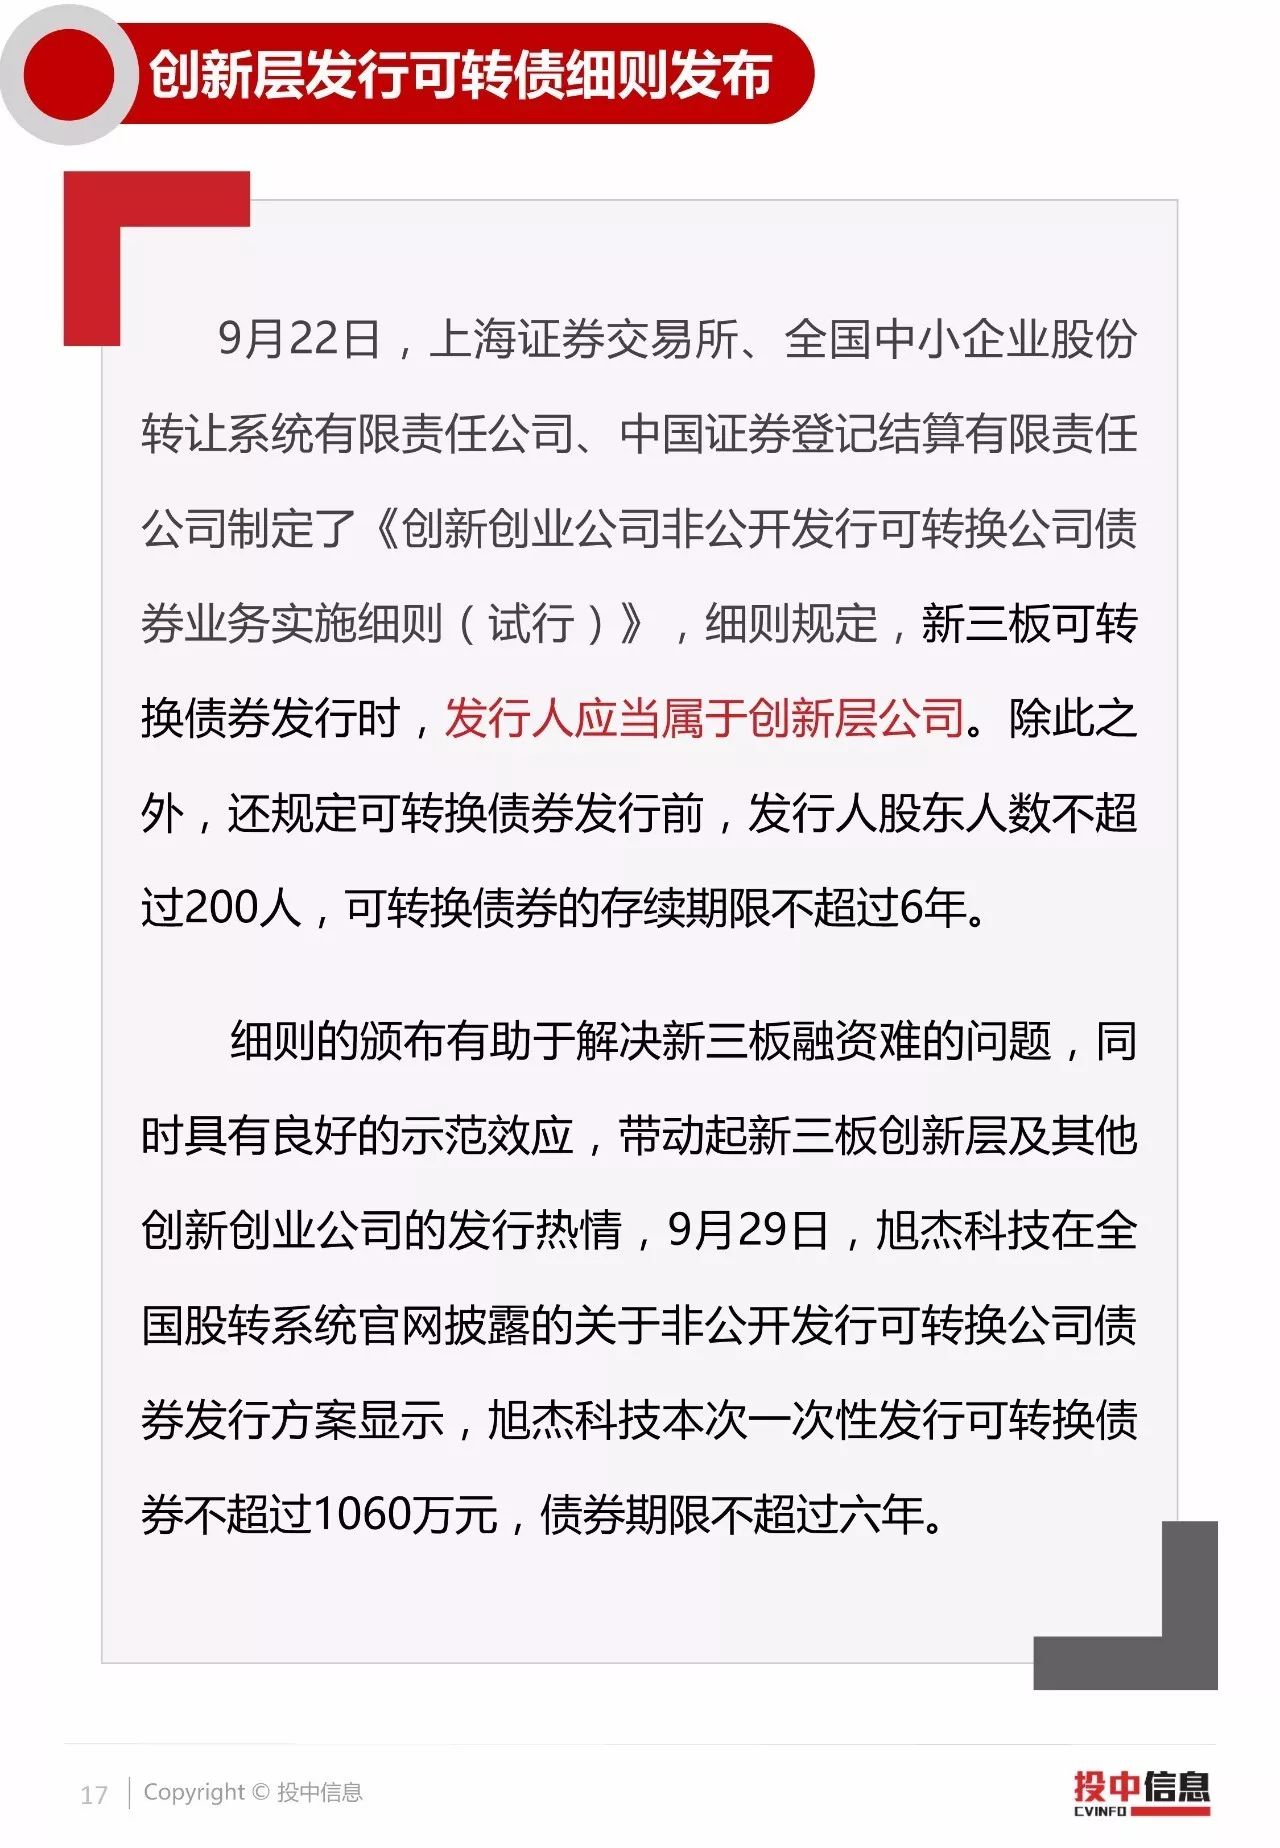 新三板2017年三季度数据报告_搜狐财经_搜狐